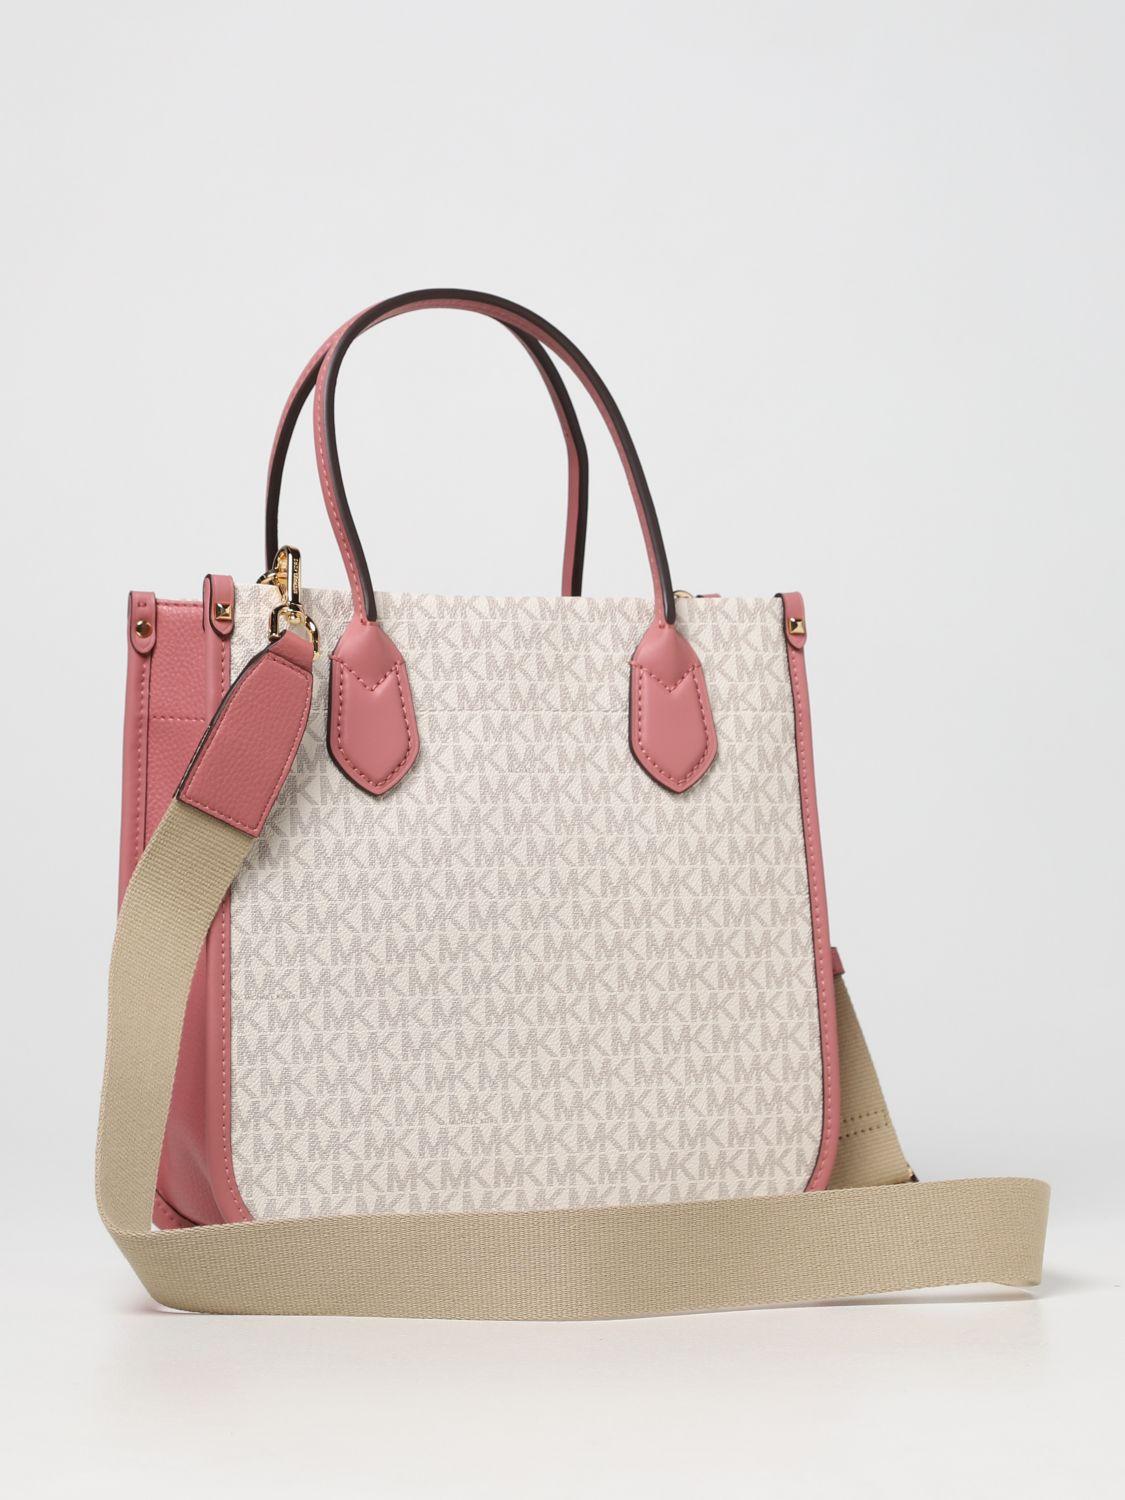 Michael Kors Women's Pink Tote Bags